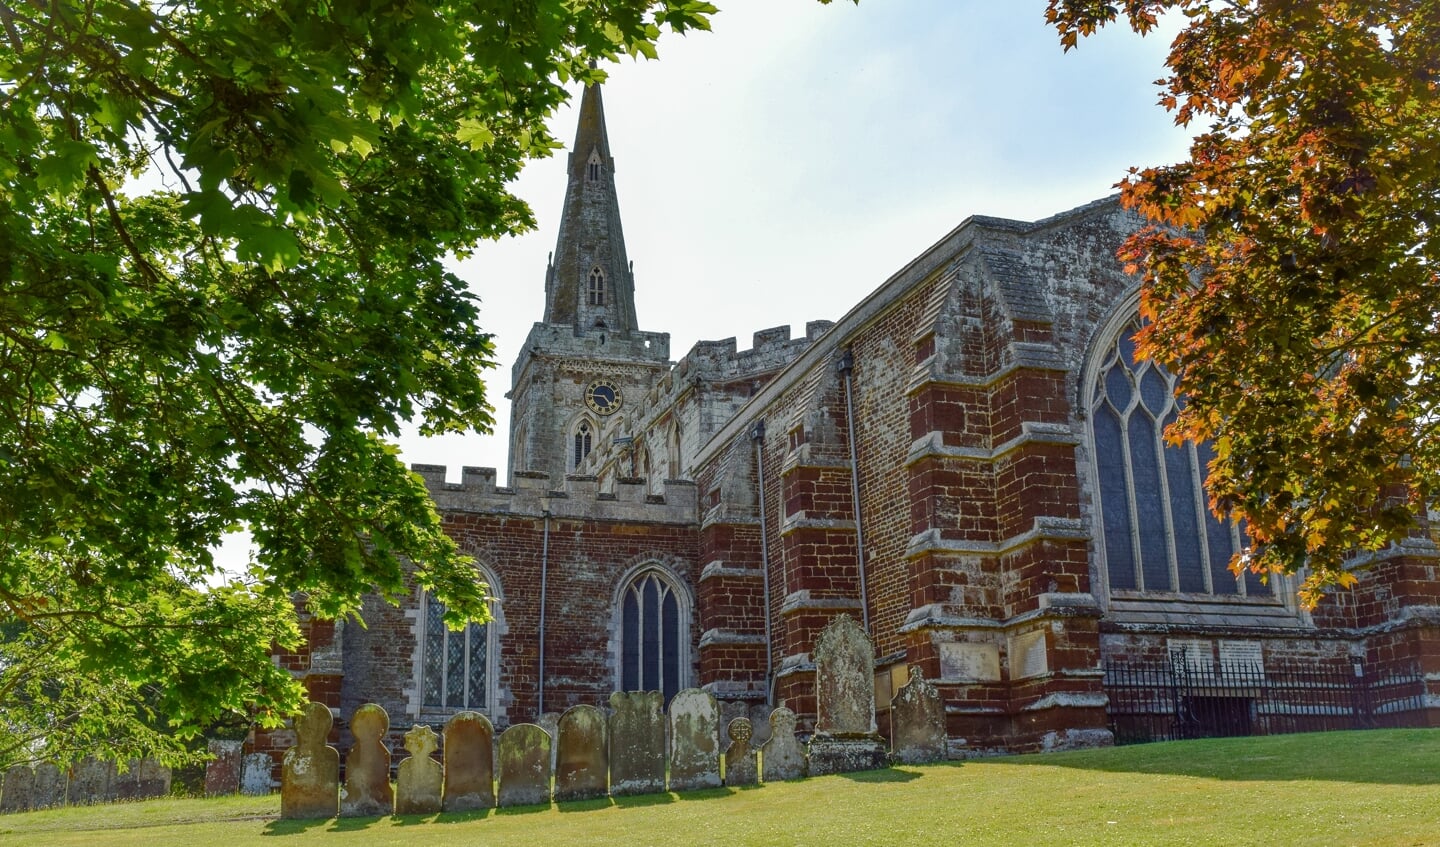 The Church of St Mary the Virgin in Finedon, Northamptonshire, waar Richard Coles van 2011 tot dit jaar dominee was.